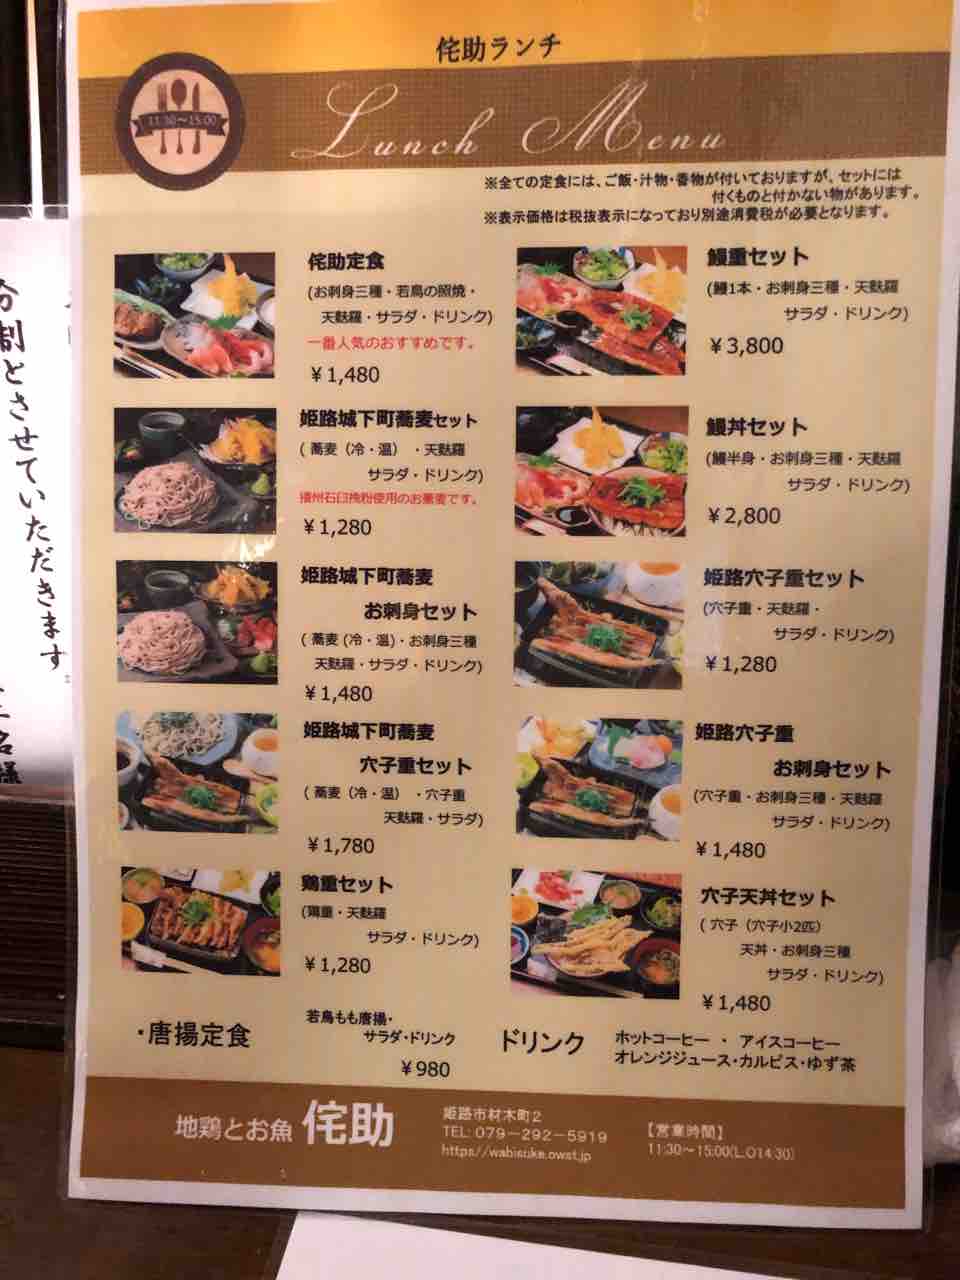 古民家町屋ランチ 地鶏とお魚 姫路の侘助 わびすけ 兵庫県で美味いランチを食べ尽くす 今日のランチは何にしようかな